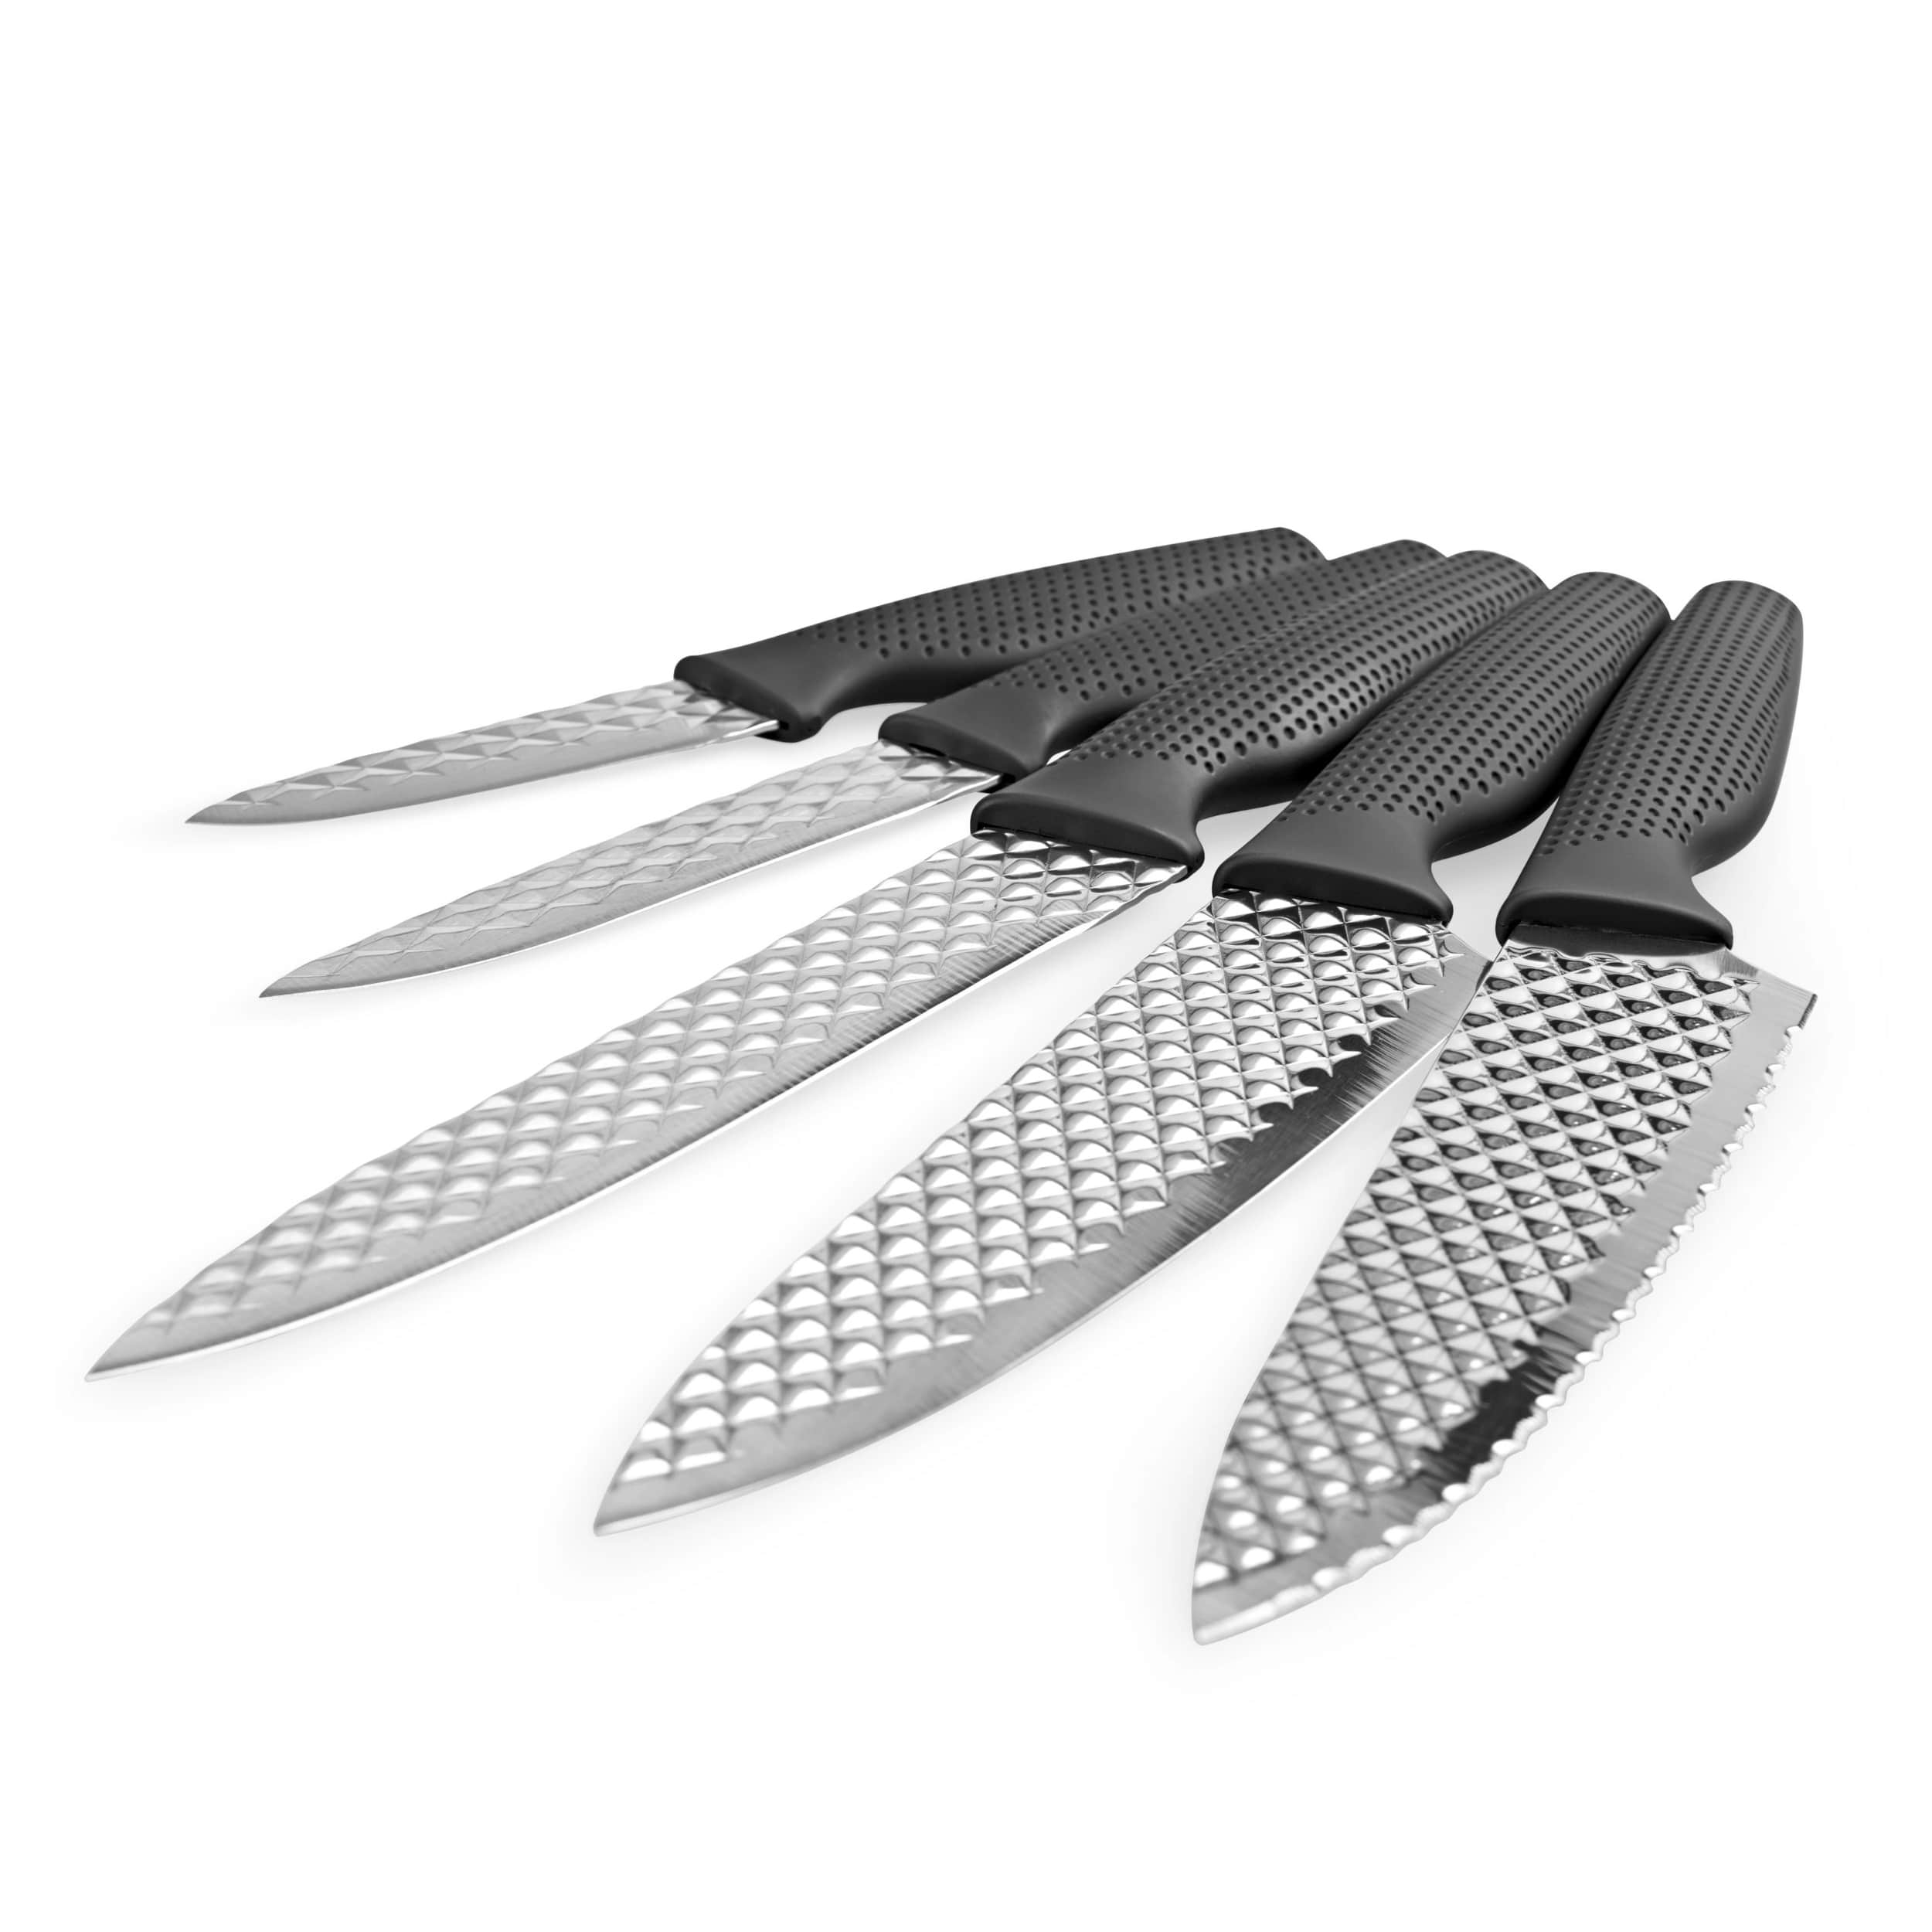 harry blackstone air blade euroshopping mediashop kit de couteau complet avec couteau du chef jambon universel viande et legumesjpg-min